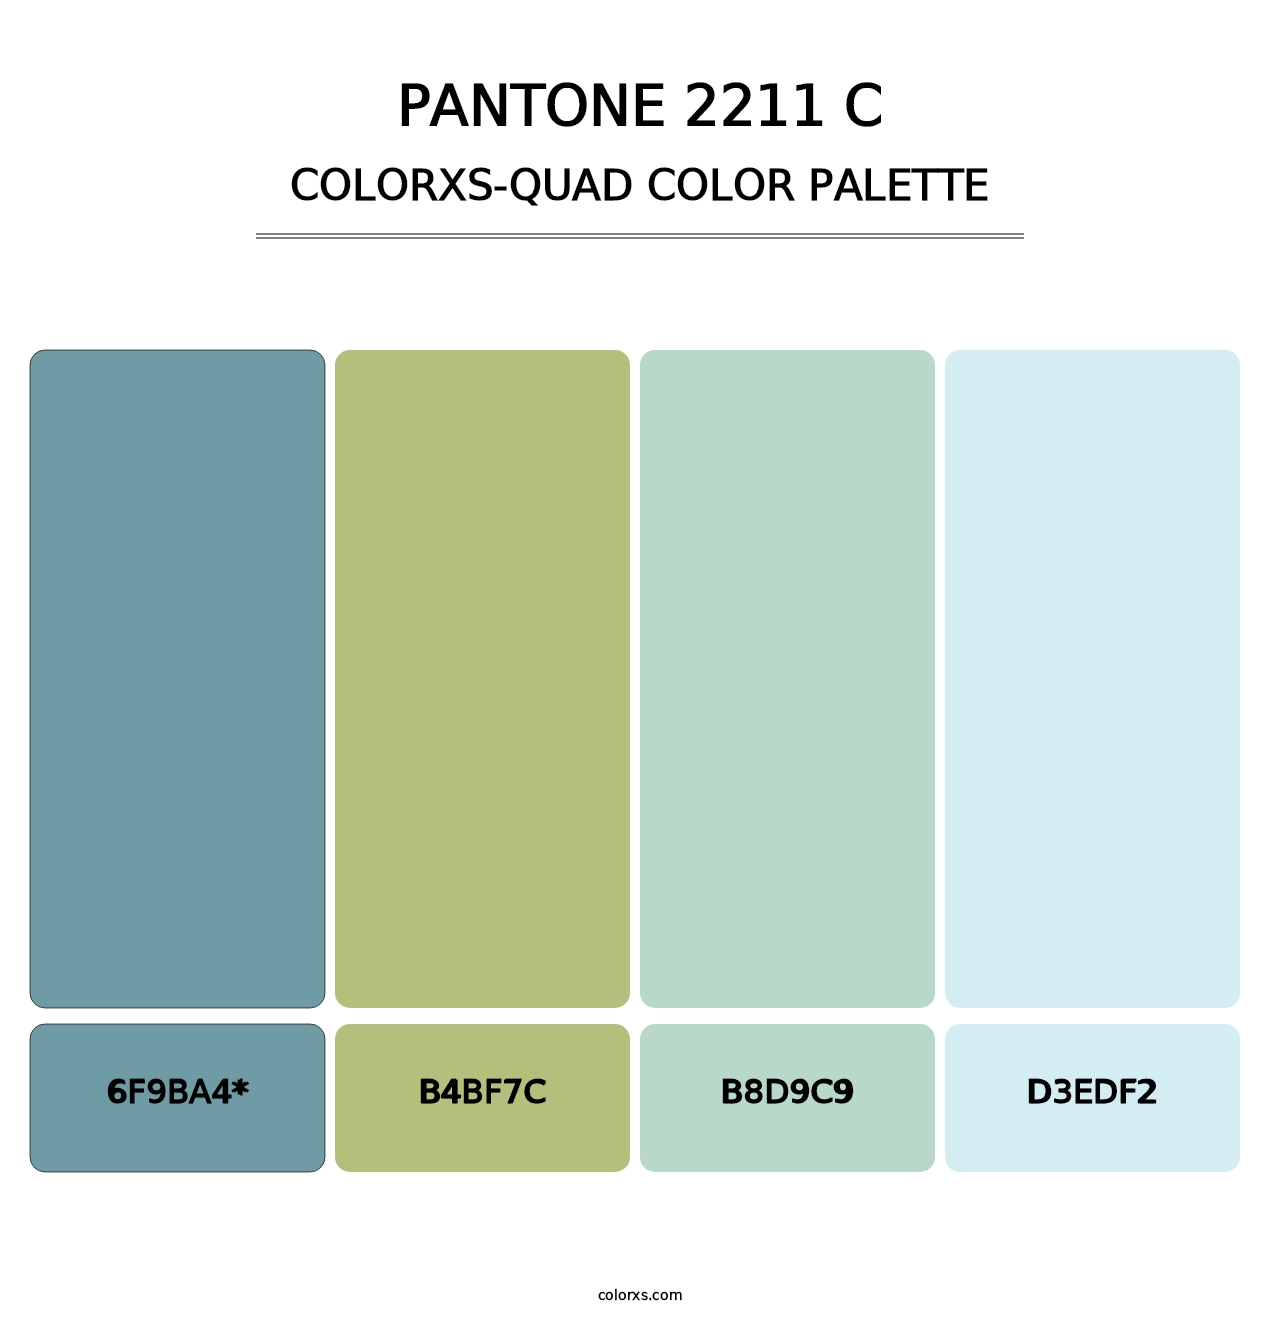 PANTONE 2211 C - Colorxs Quad Palette